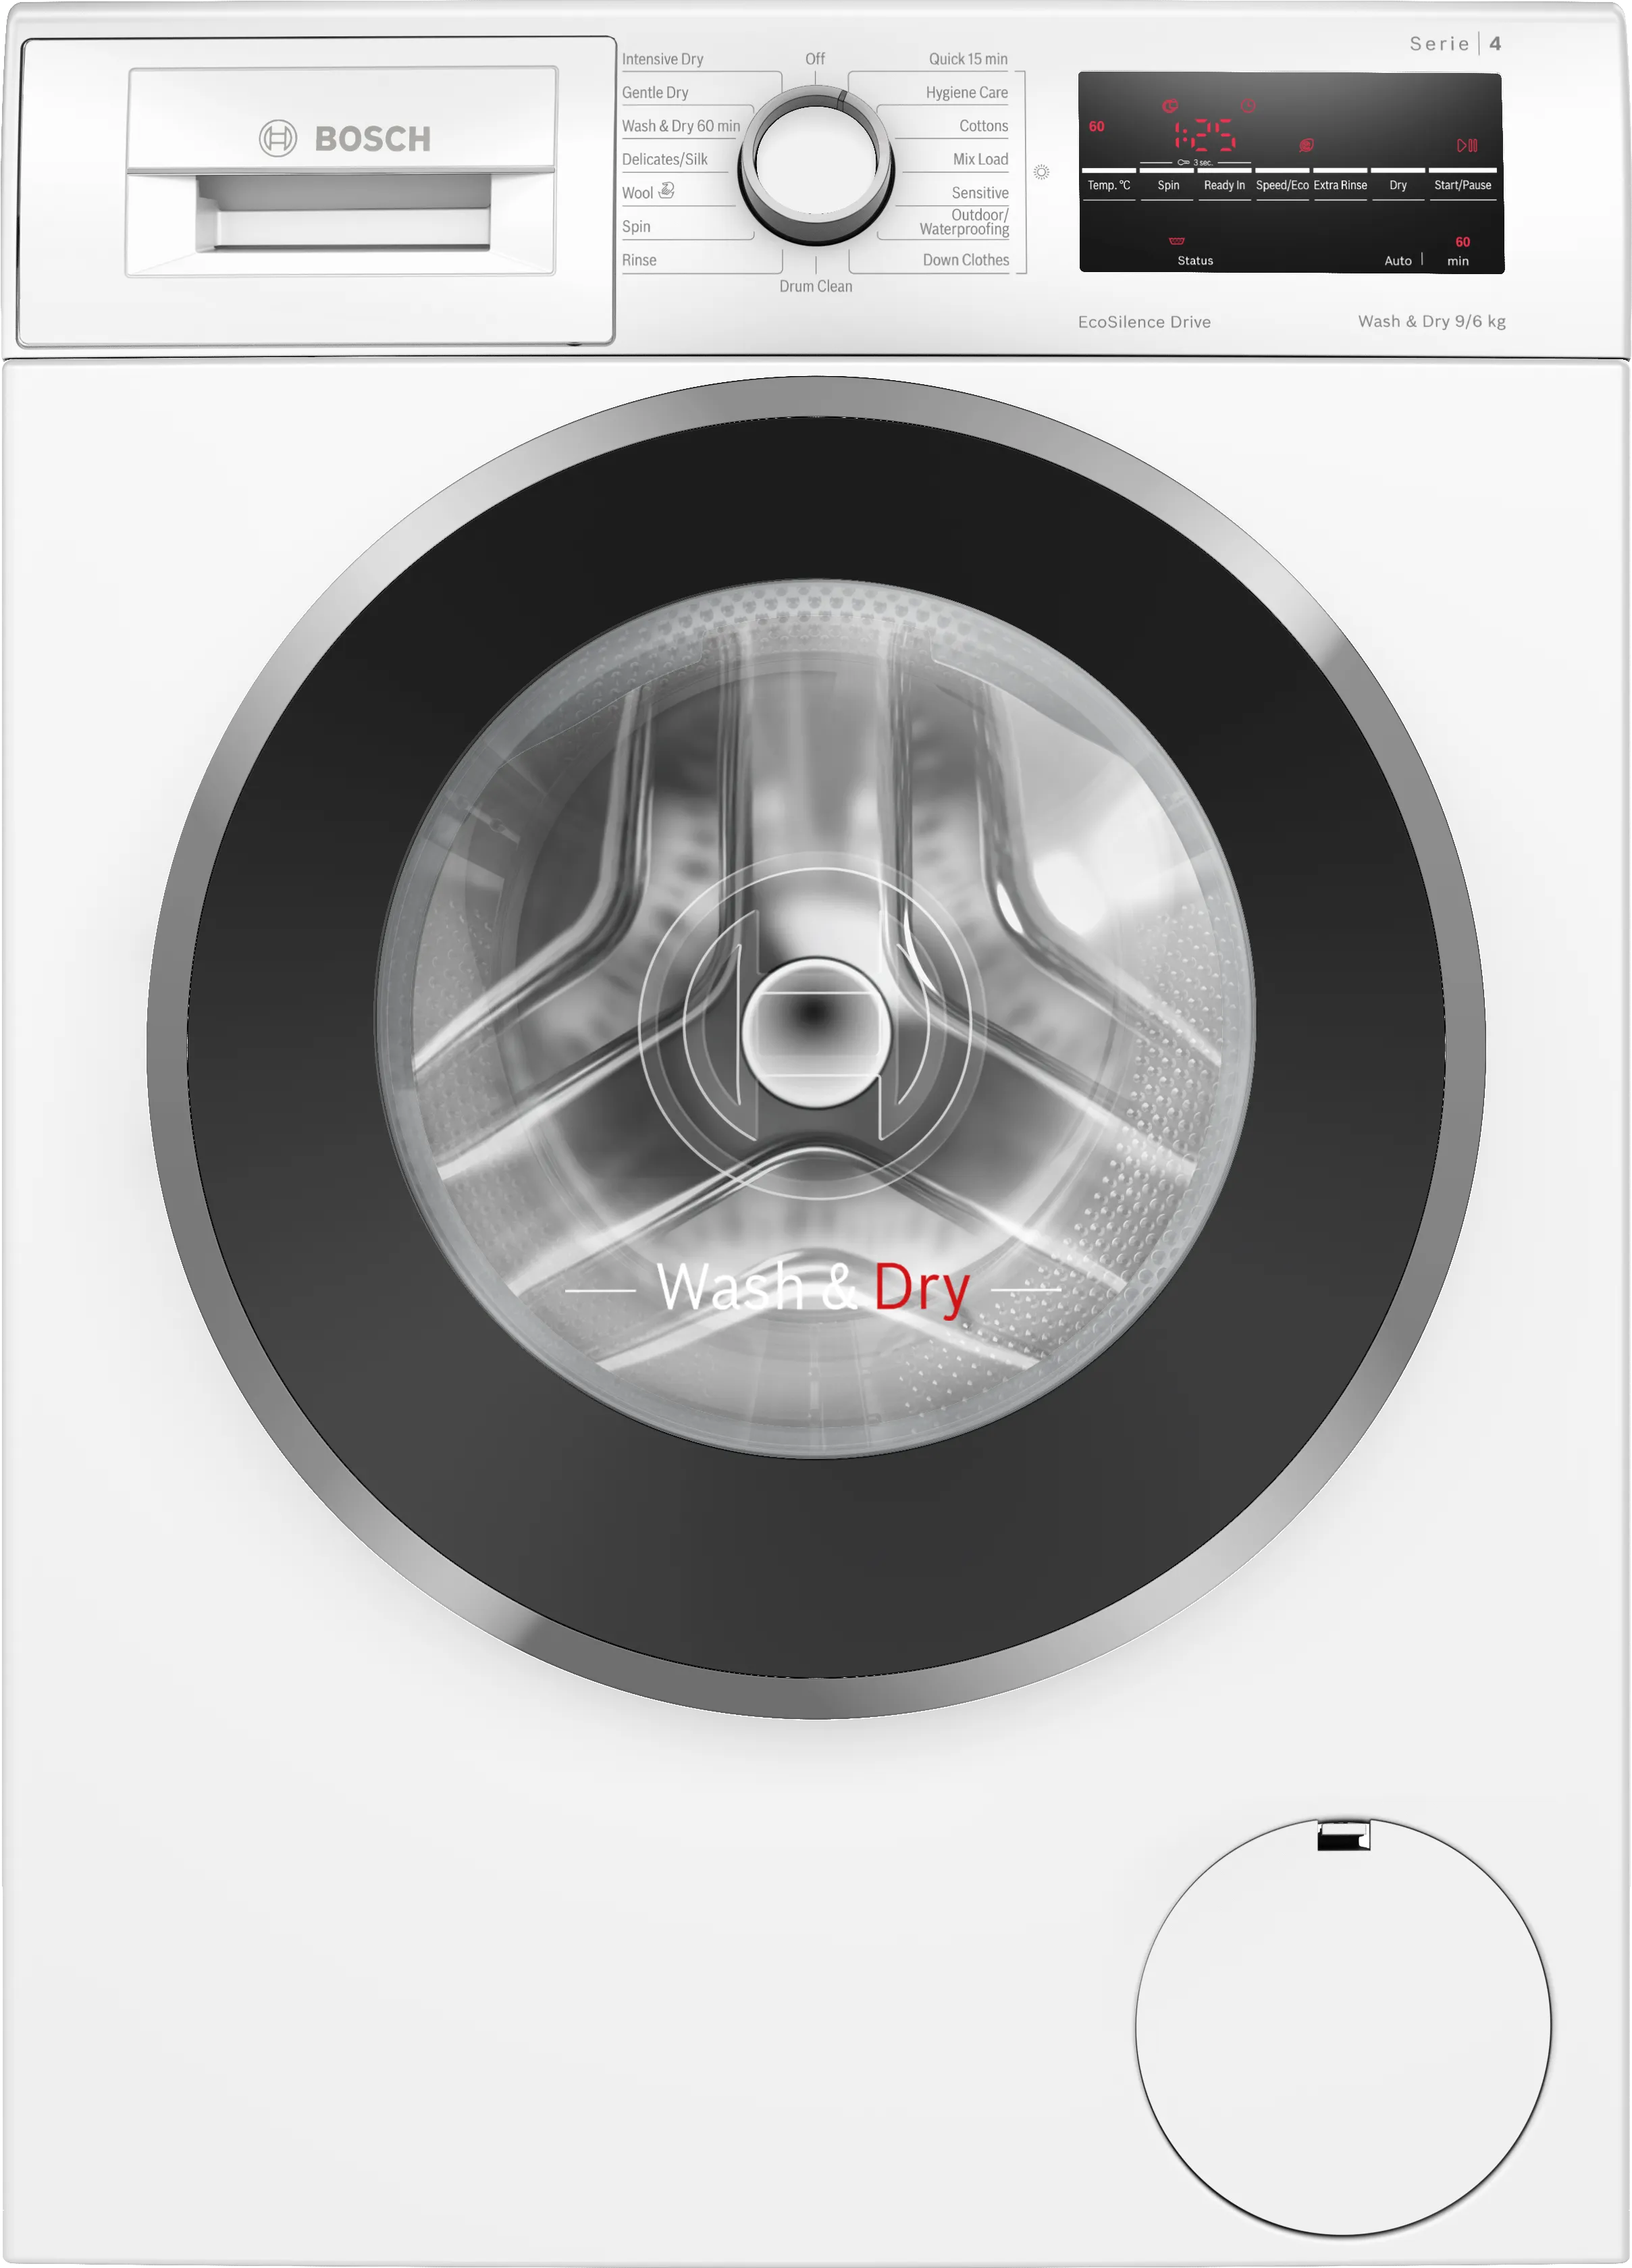 Series 4 Washer dryer 9/6 kg 1400 rpm 